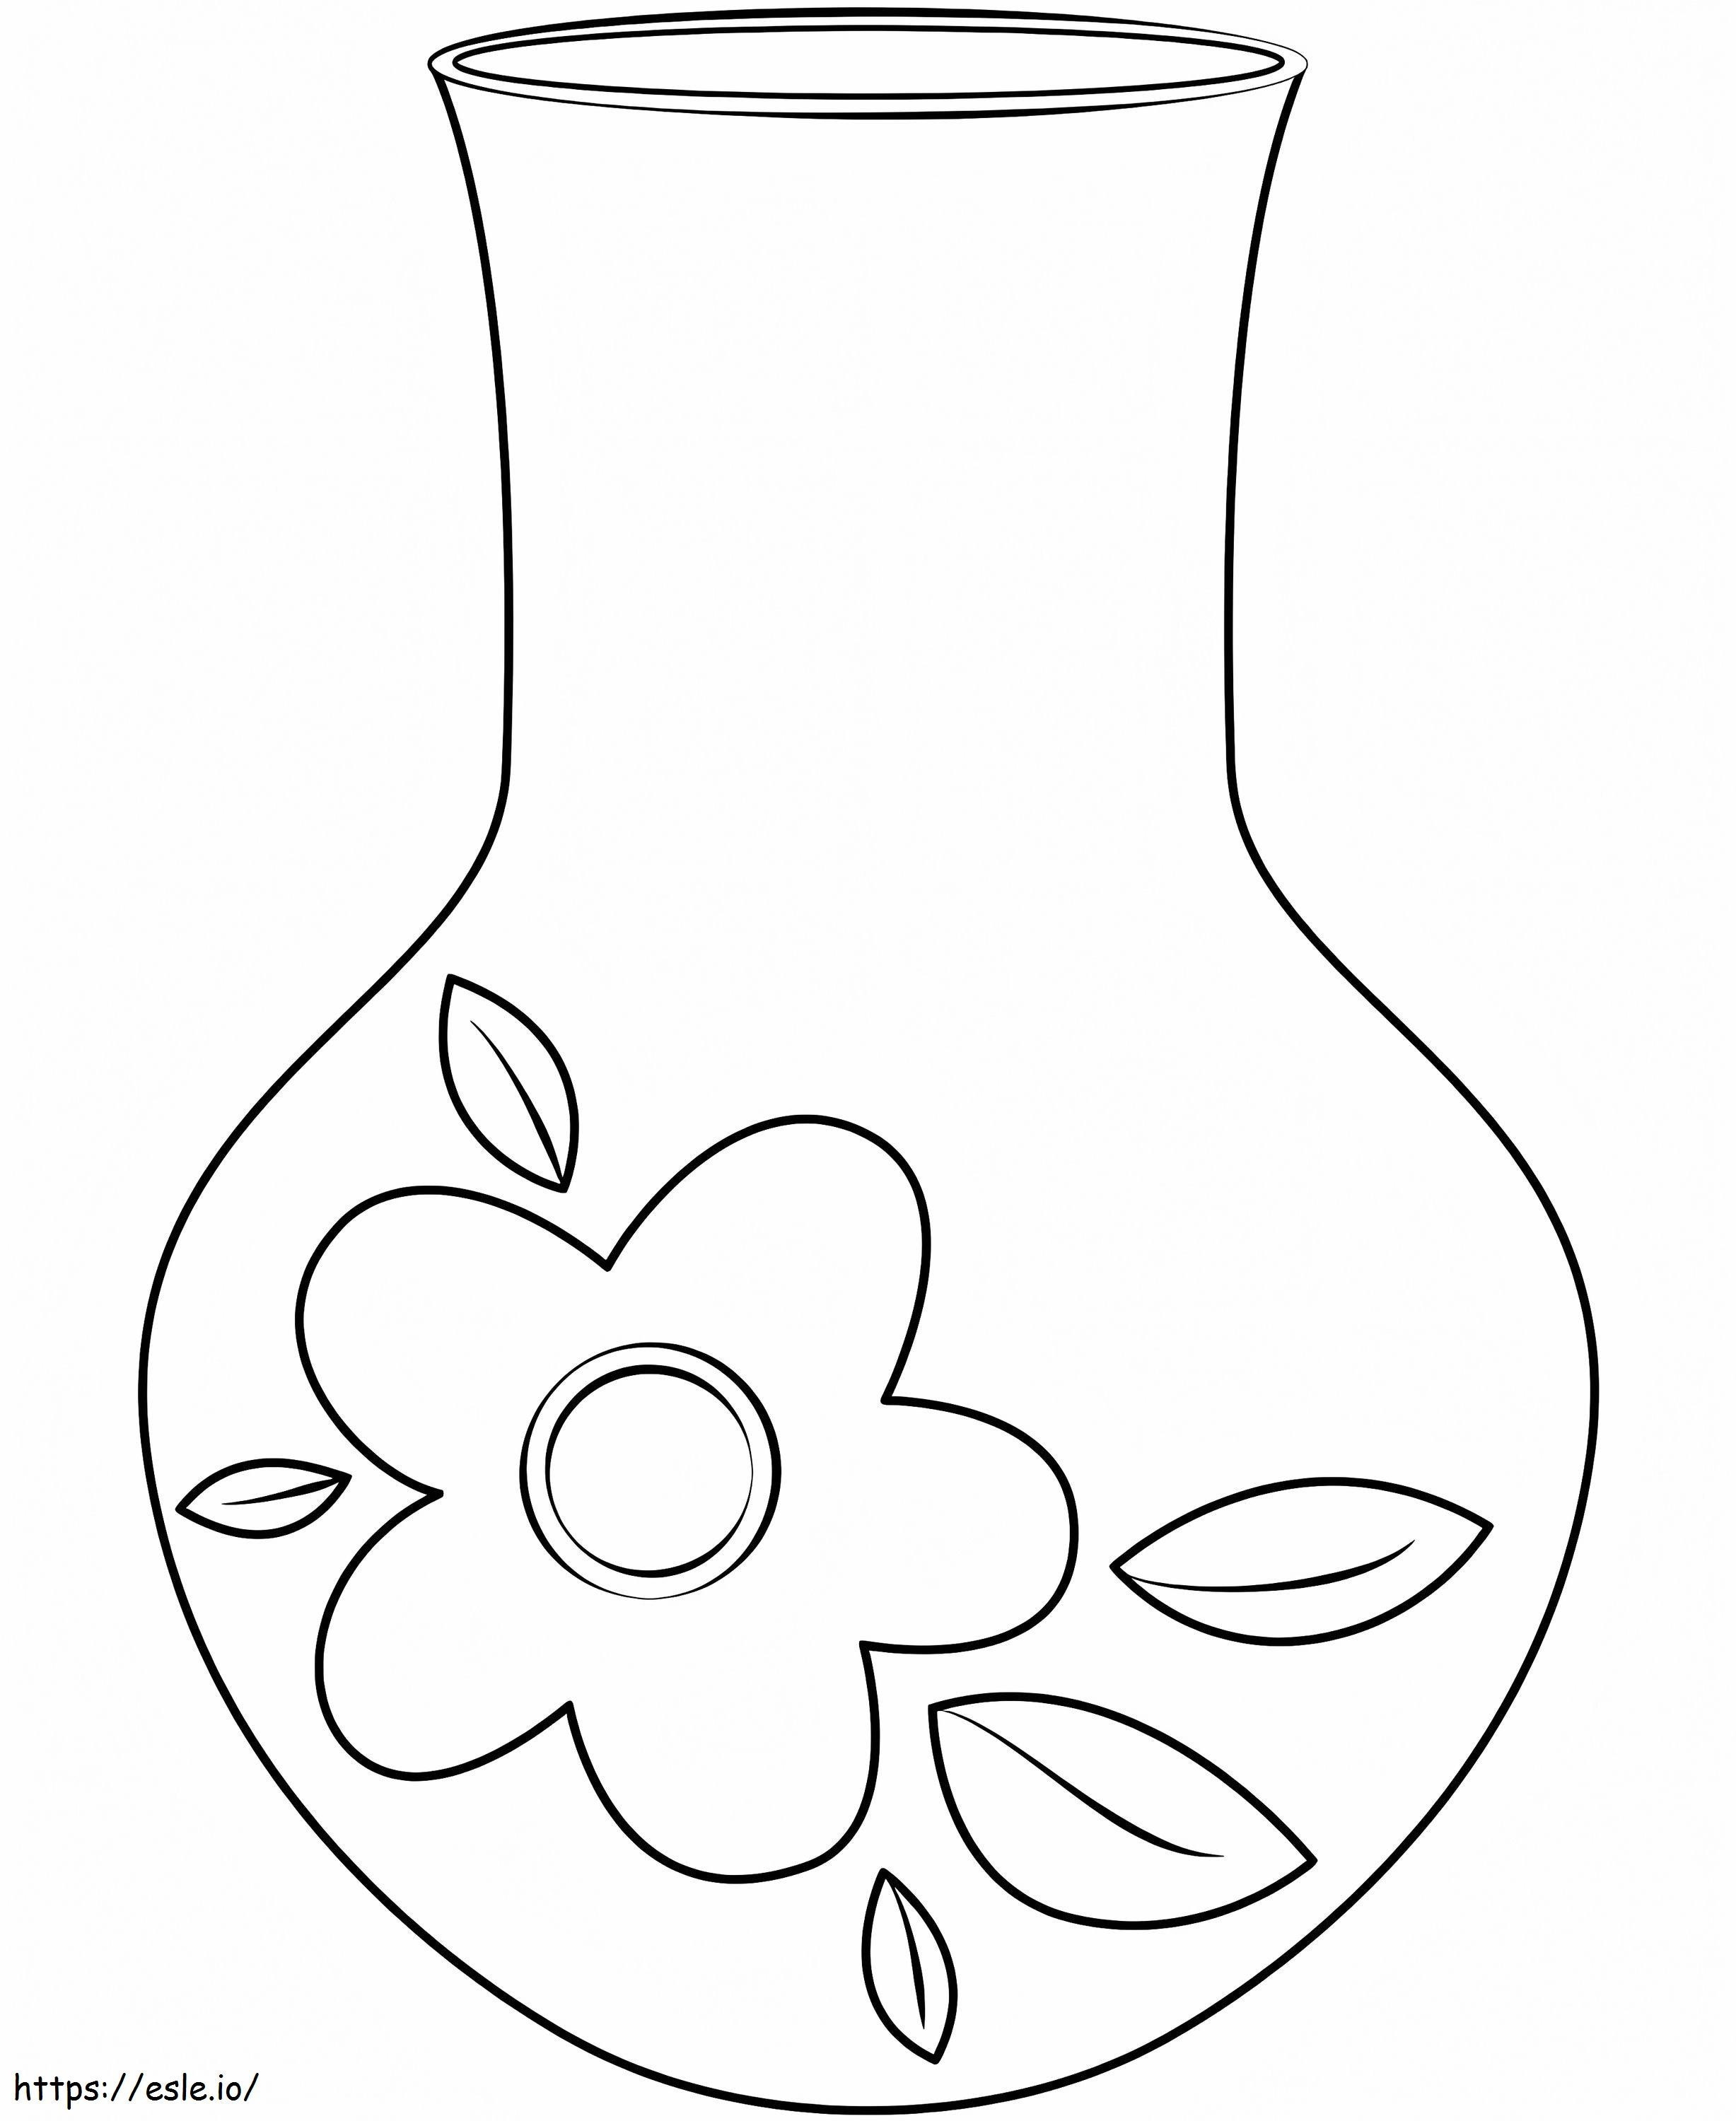 Coloriage Vase simple à imprimer dessin